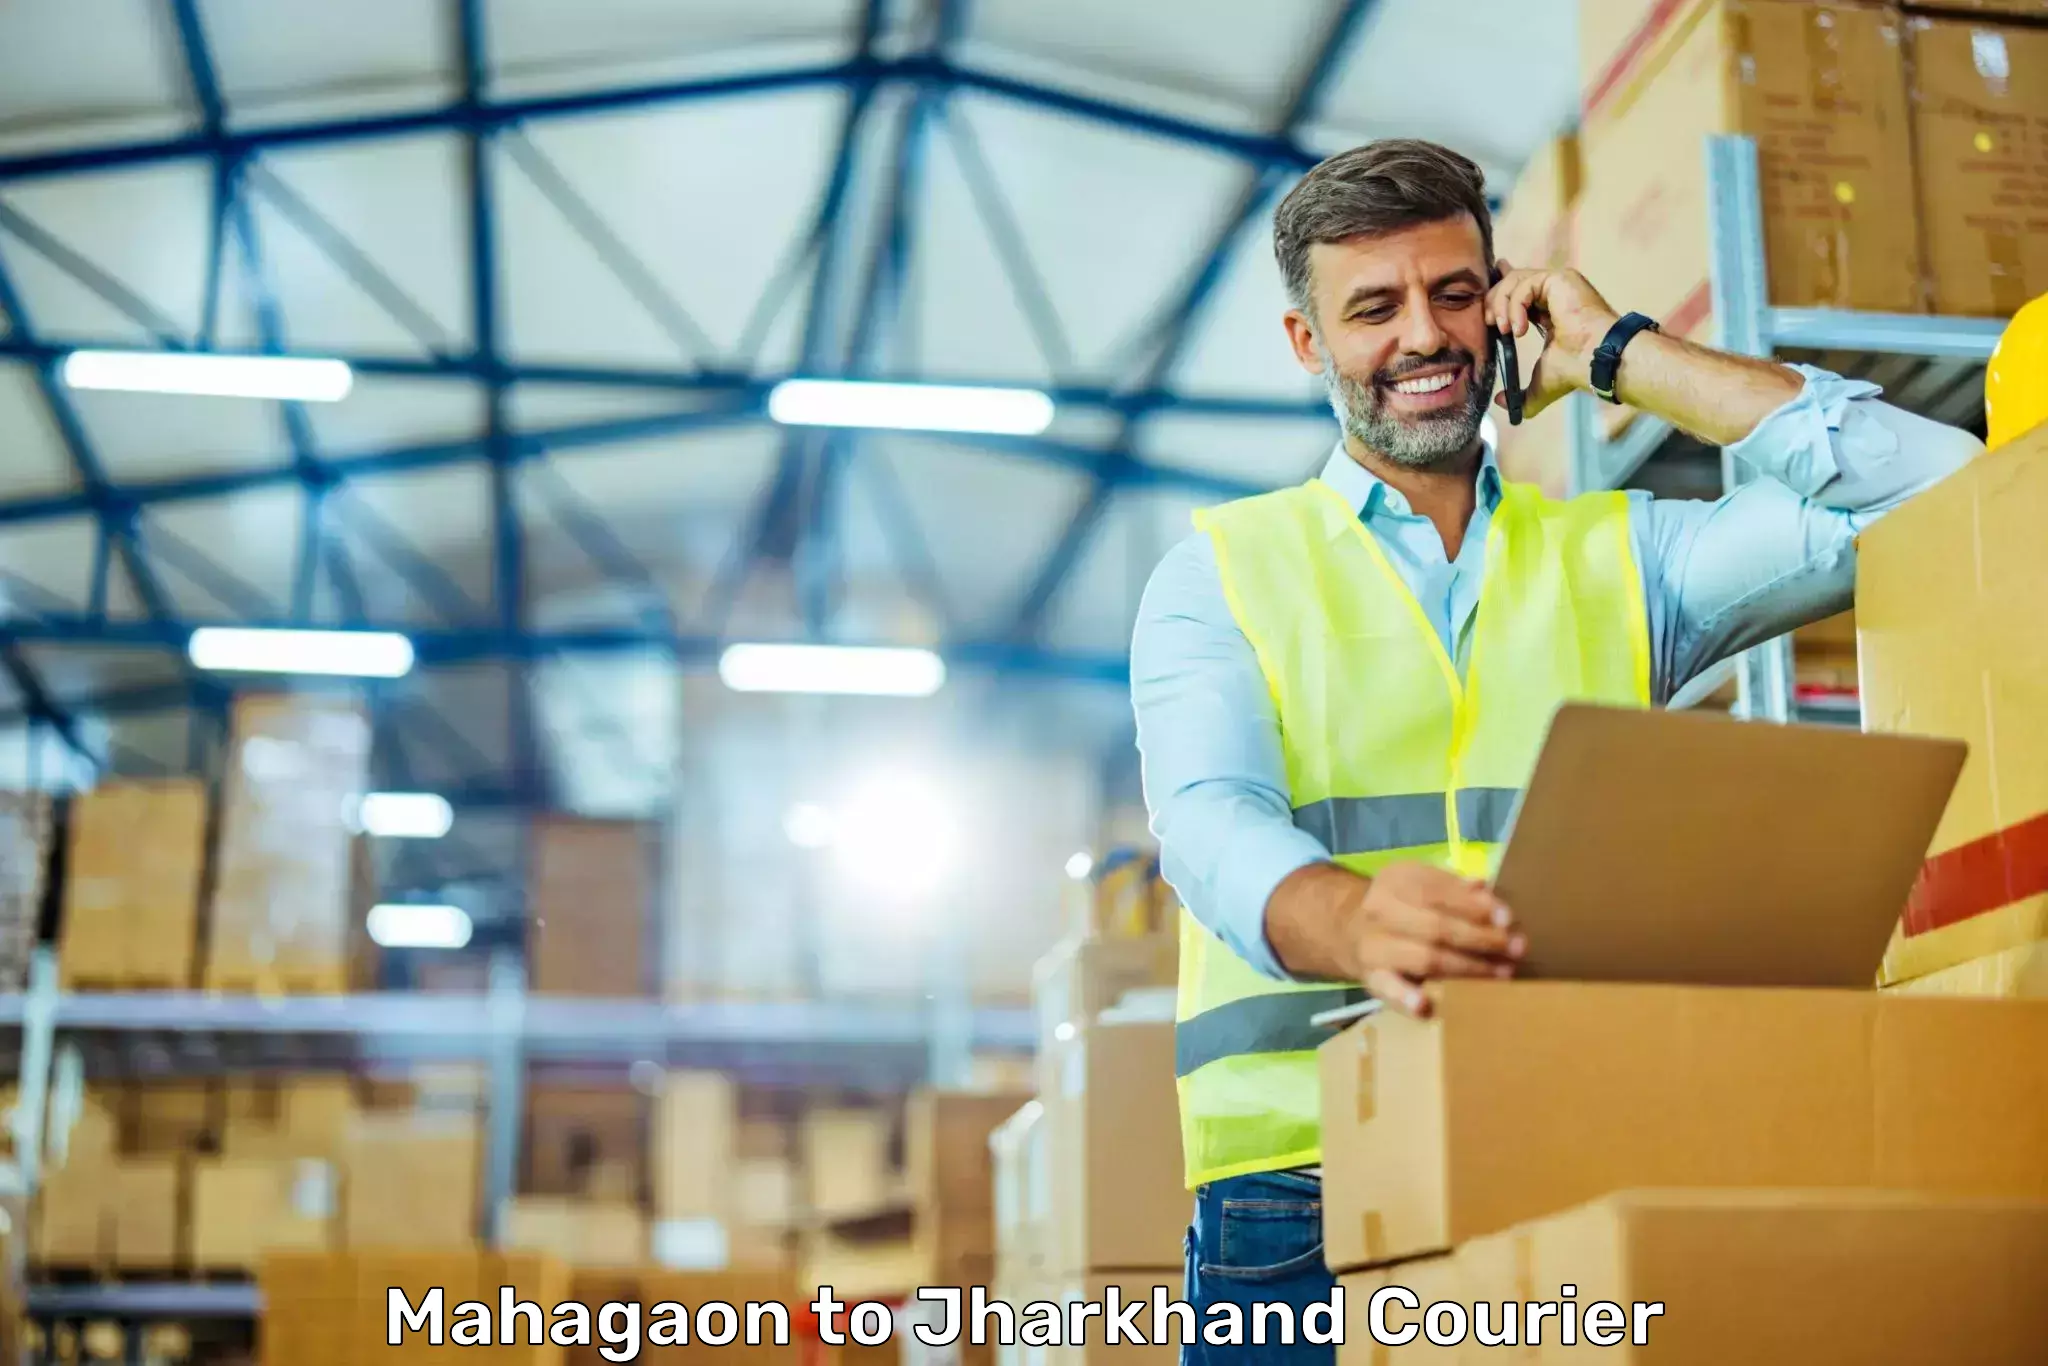 Cash on delivery service Mahagaon to Bokaro